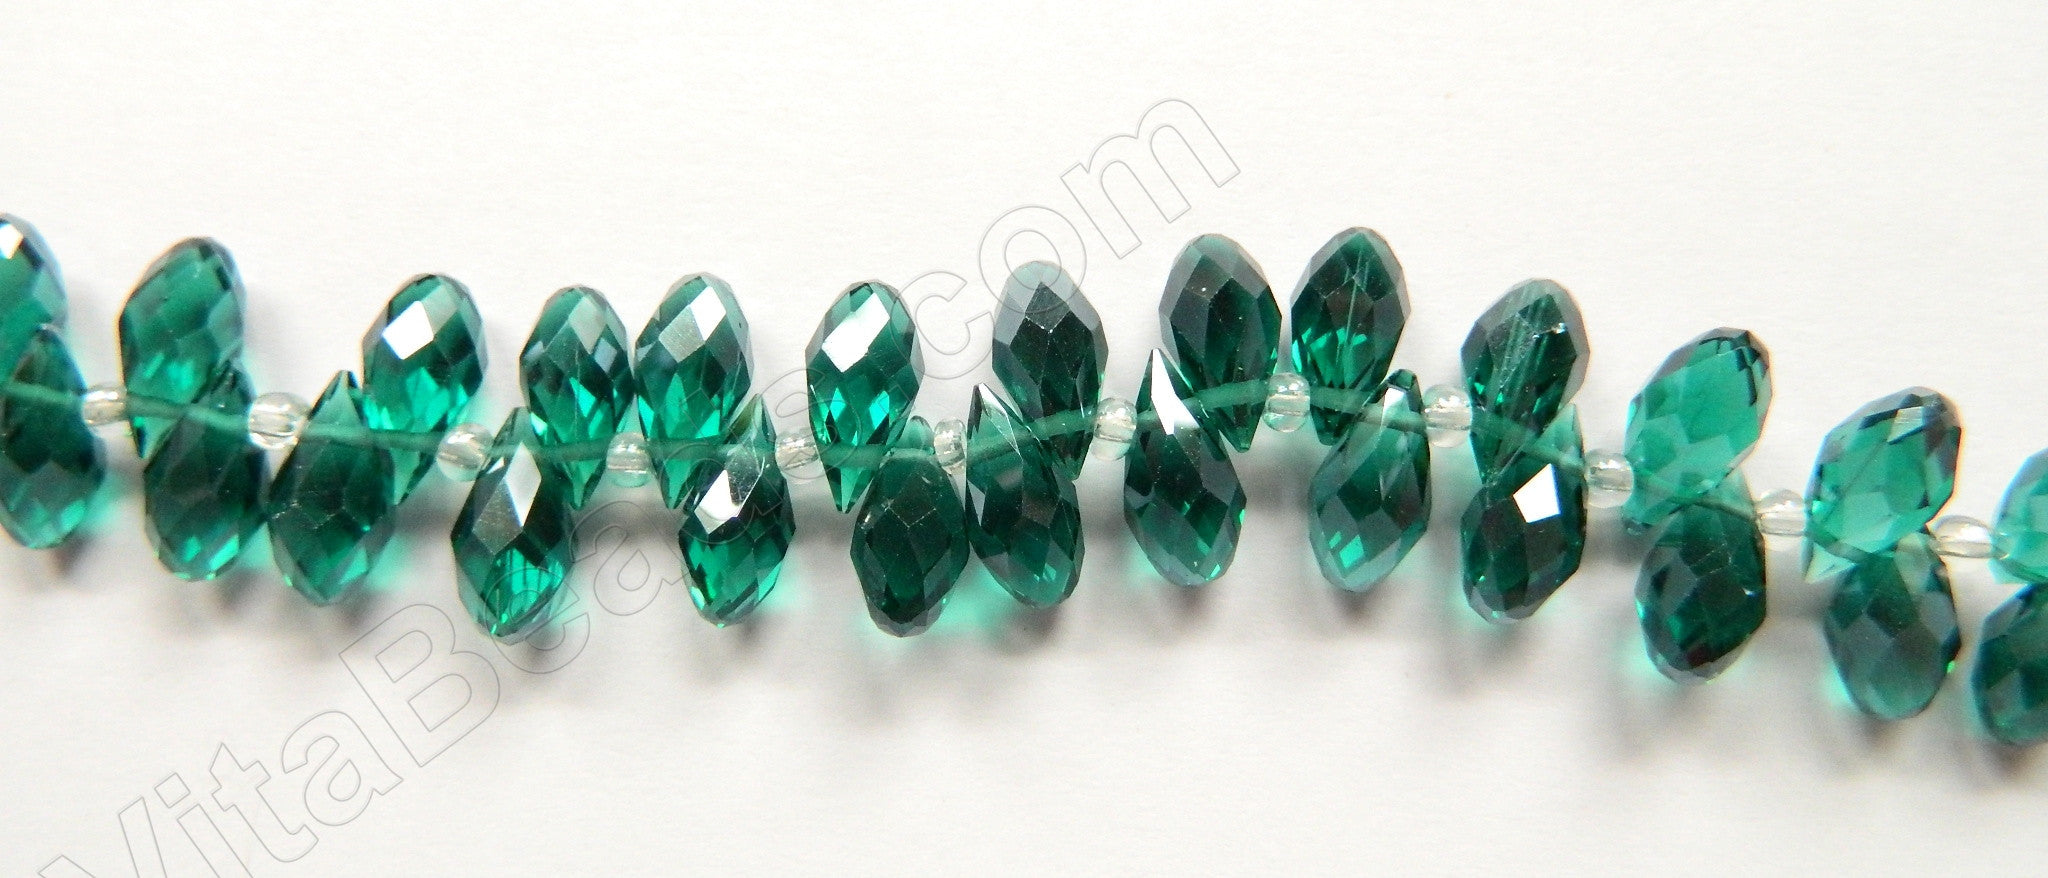 Emerald Crystal Quartz - 6x12mm Faceted Long Teardrops 8"